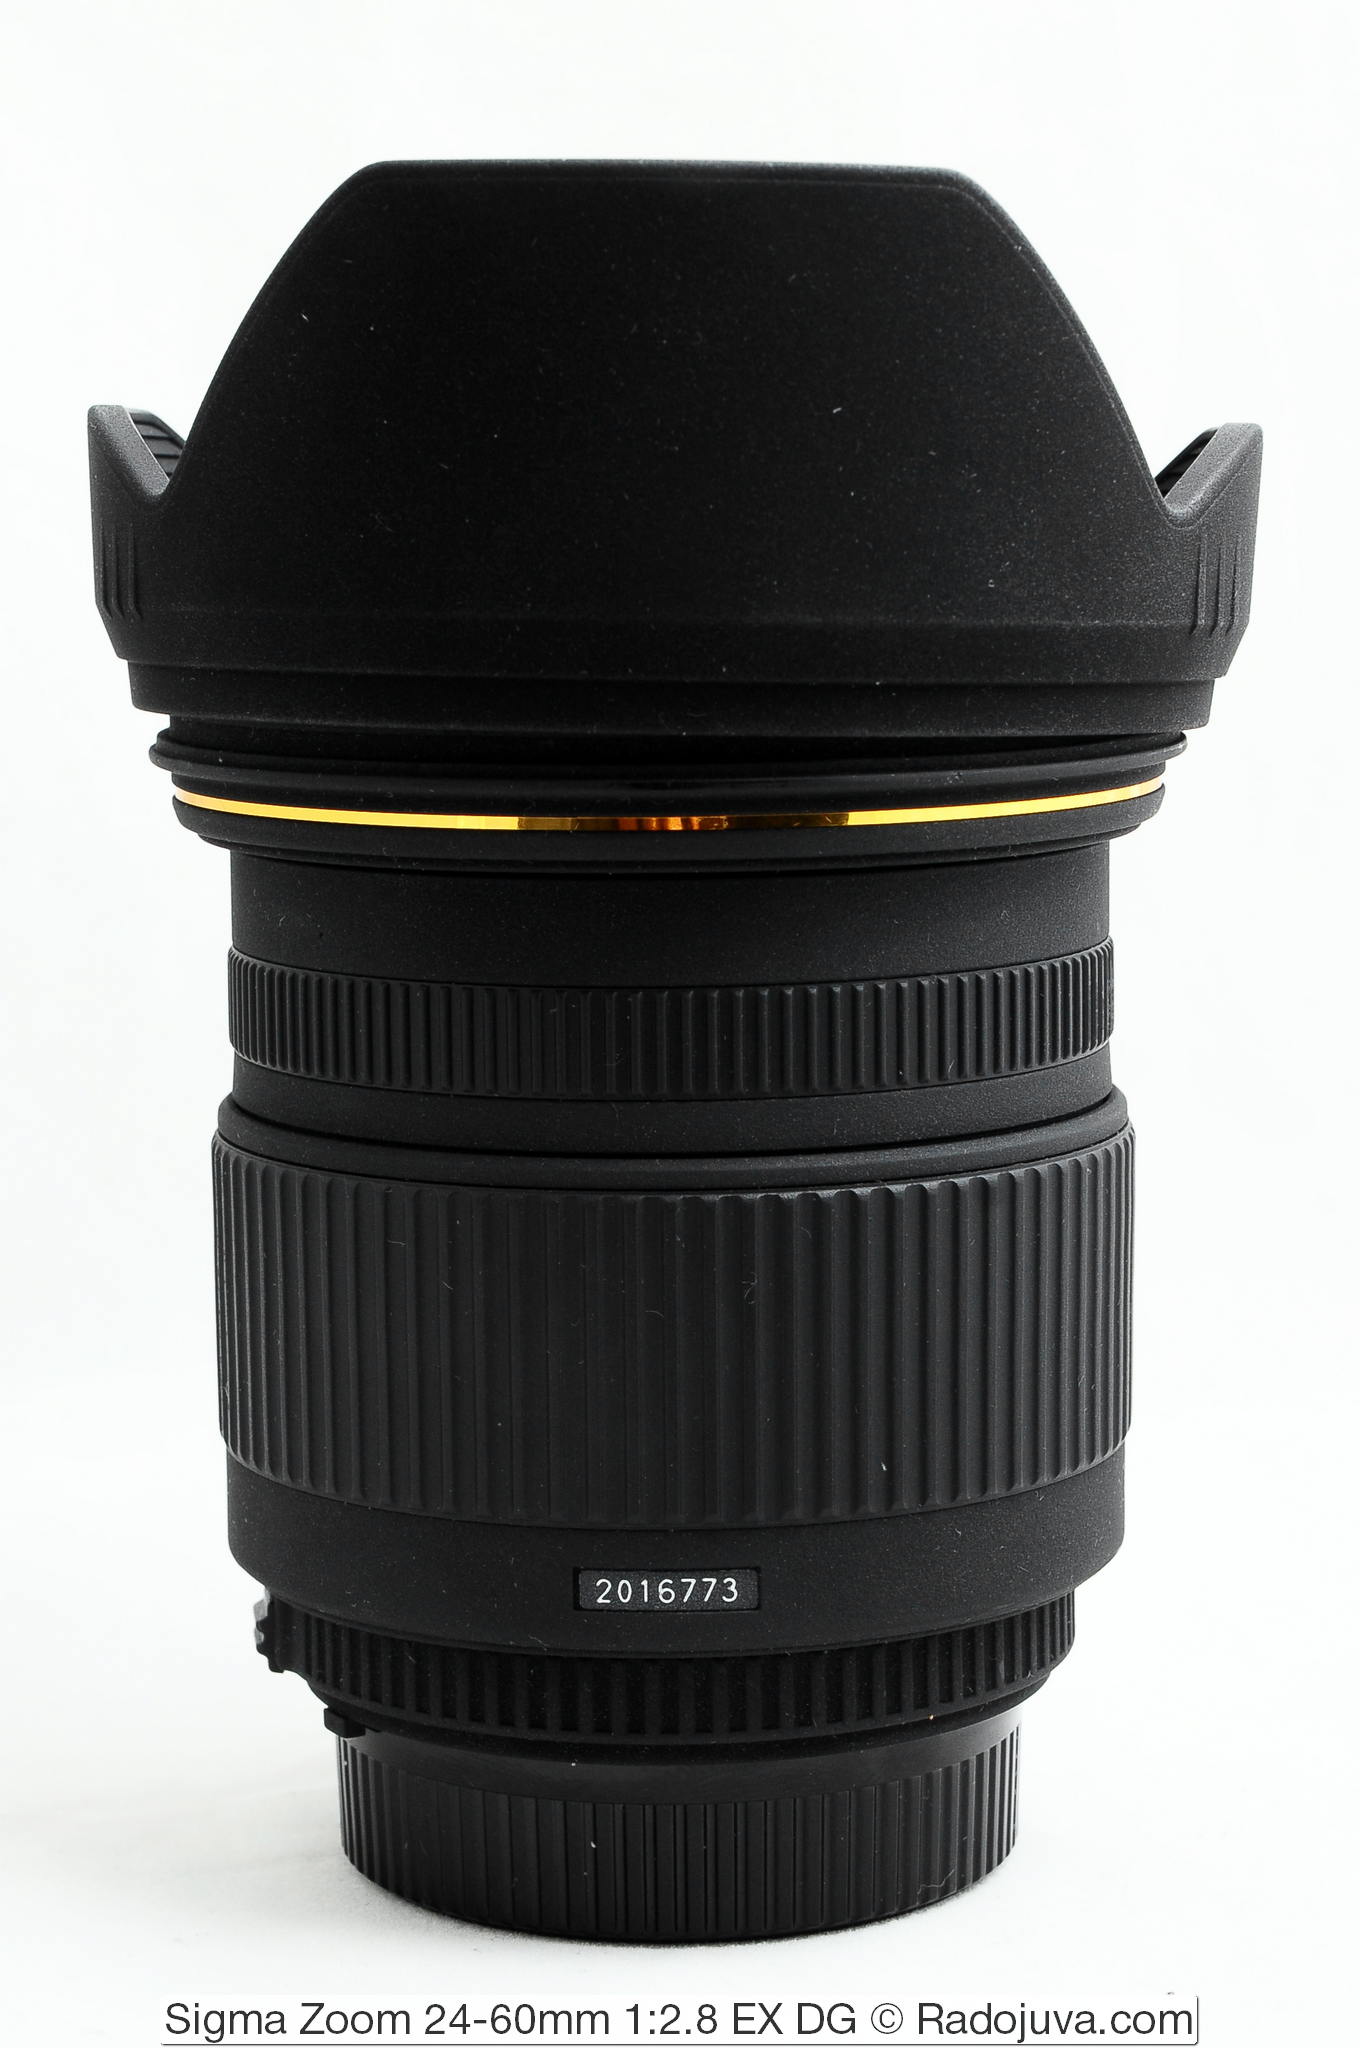 Sigma Zoom 24-60mm 1:2.8 EX DG